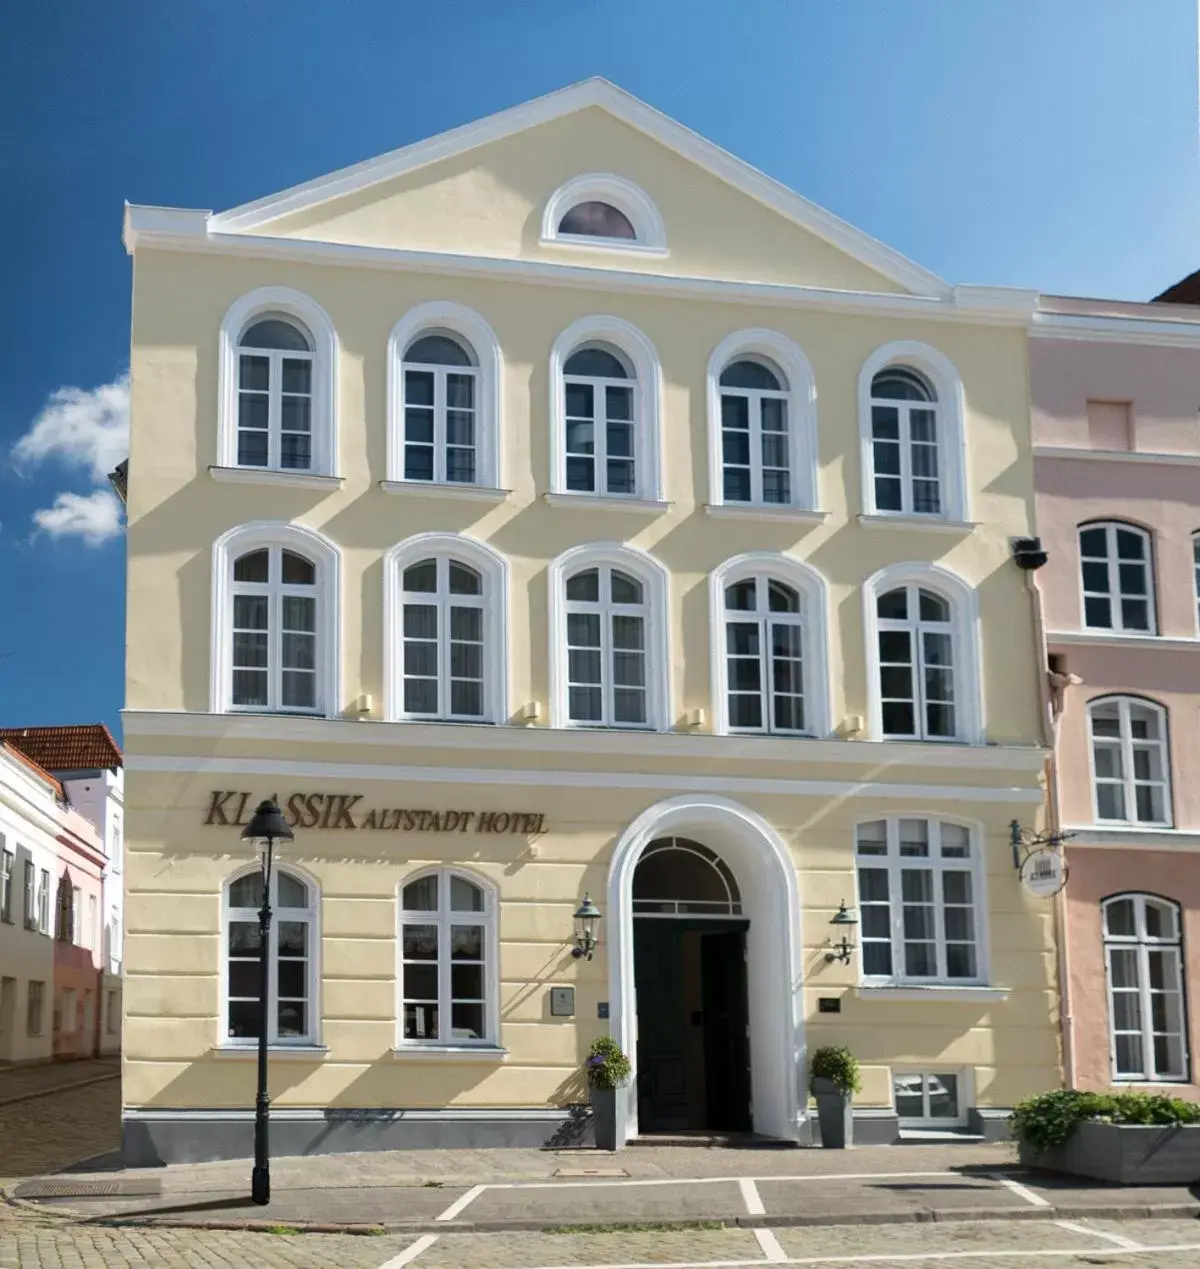 Property building in TOP CityLine Klassik Altstadt Hotel Lübeck